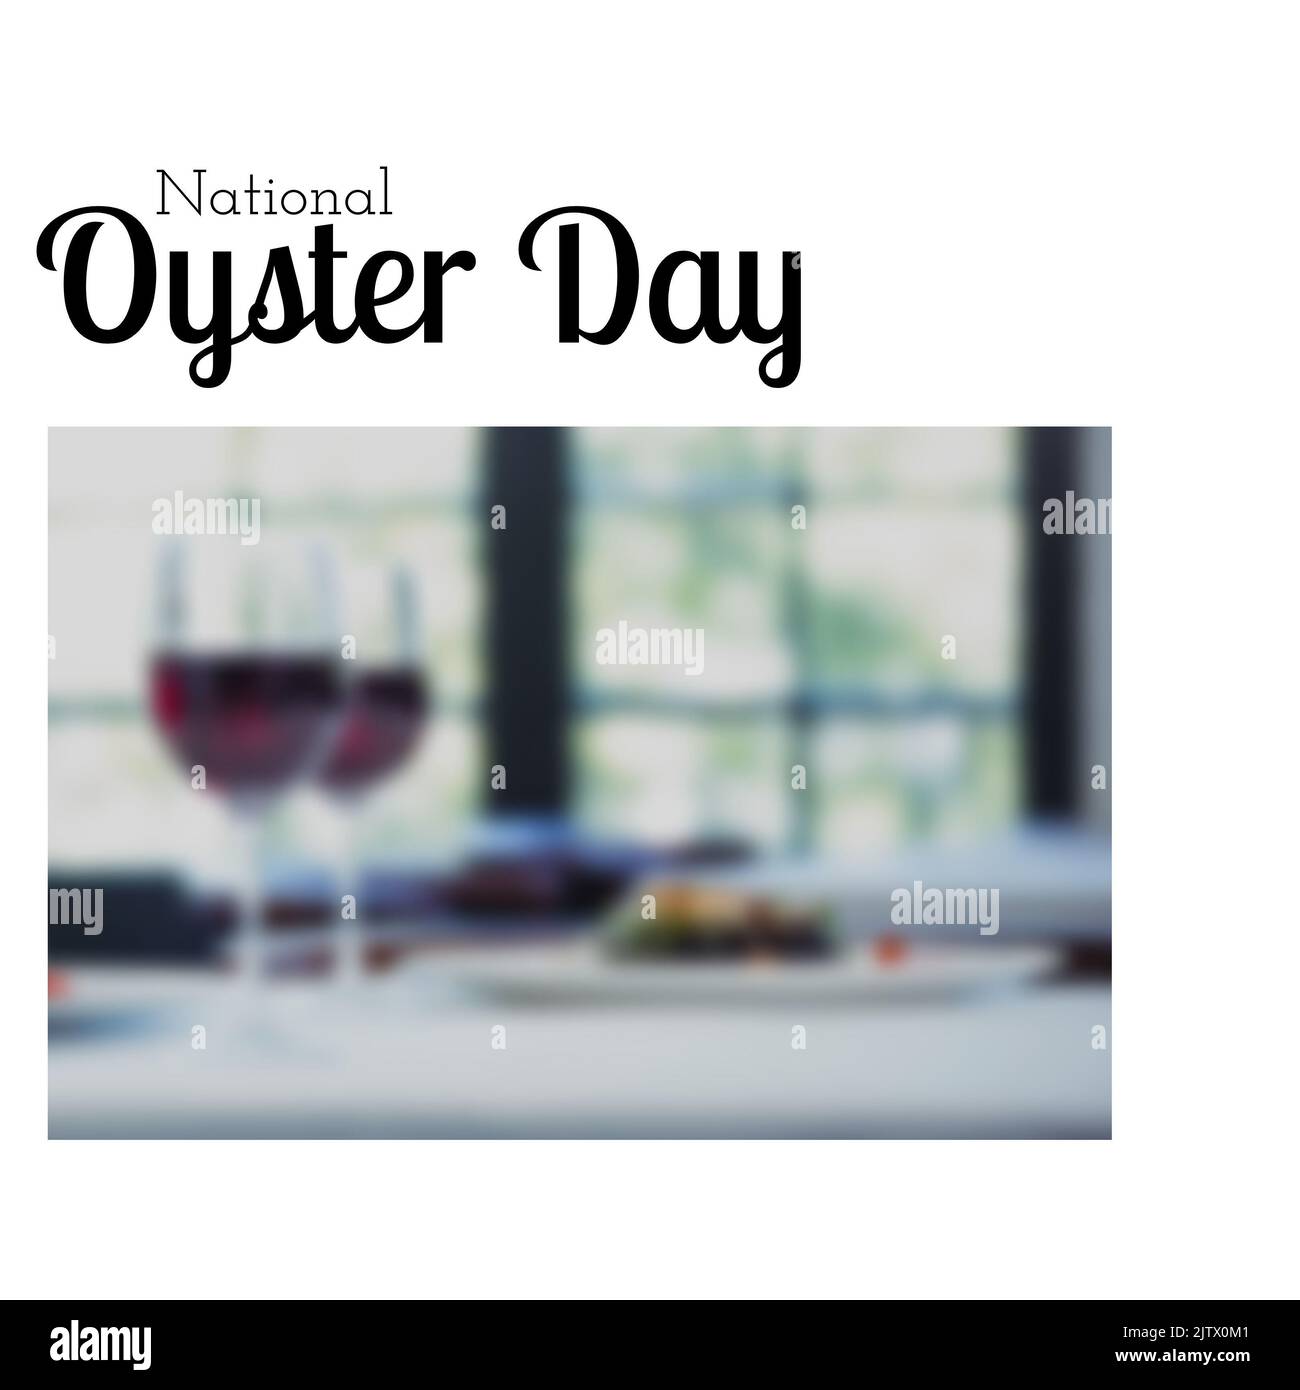 Composito digitale di testo nazionale di ostriche e wineglasses con cibo servito in piatto sul tavolo Foto Stock